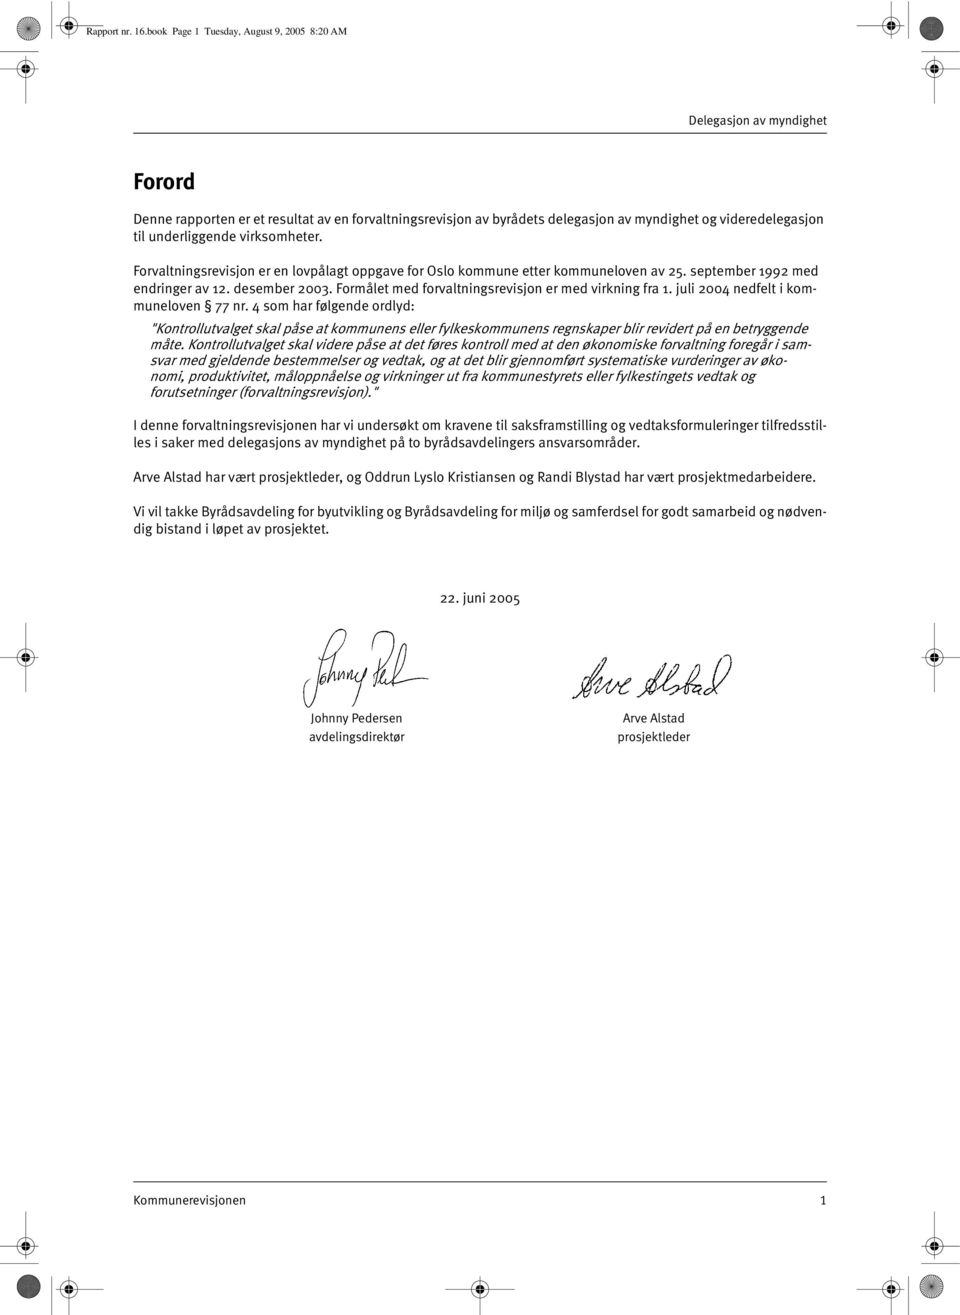 underliggende virksomheter. Forvaltningsrevisjon er en lovpålagt oppgave for Oslo kommune etter kommuneloven av 25. september 1992 med endringer av 12. desember 2003.